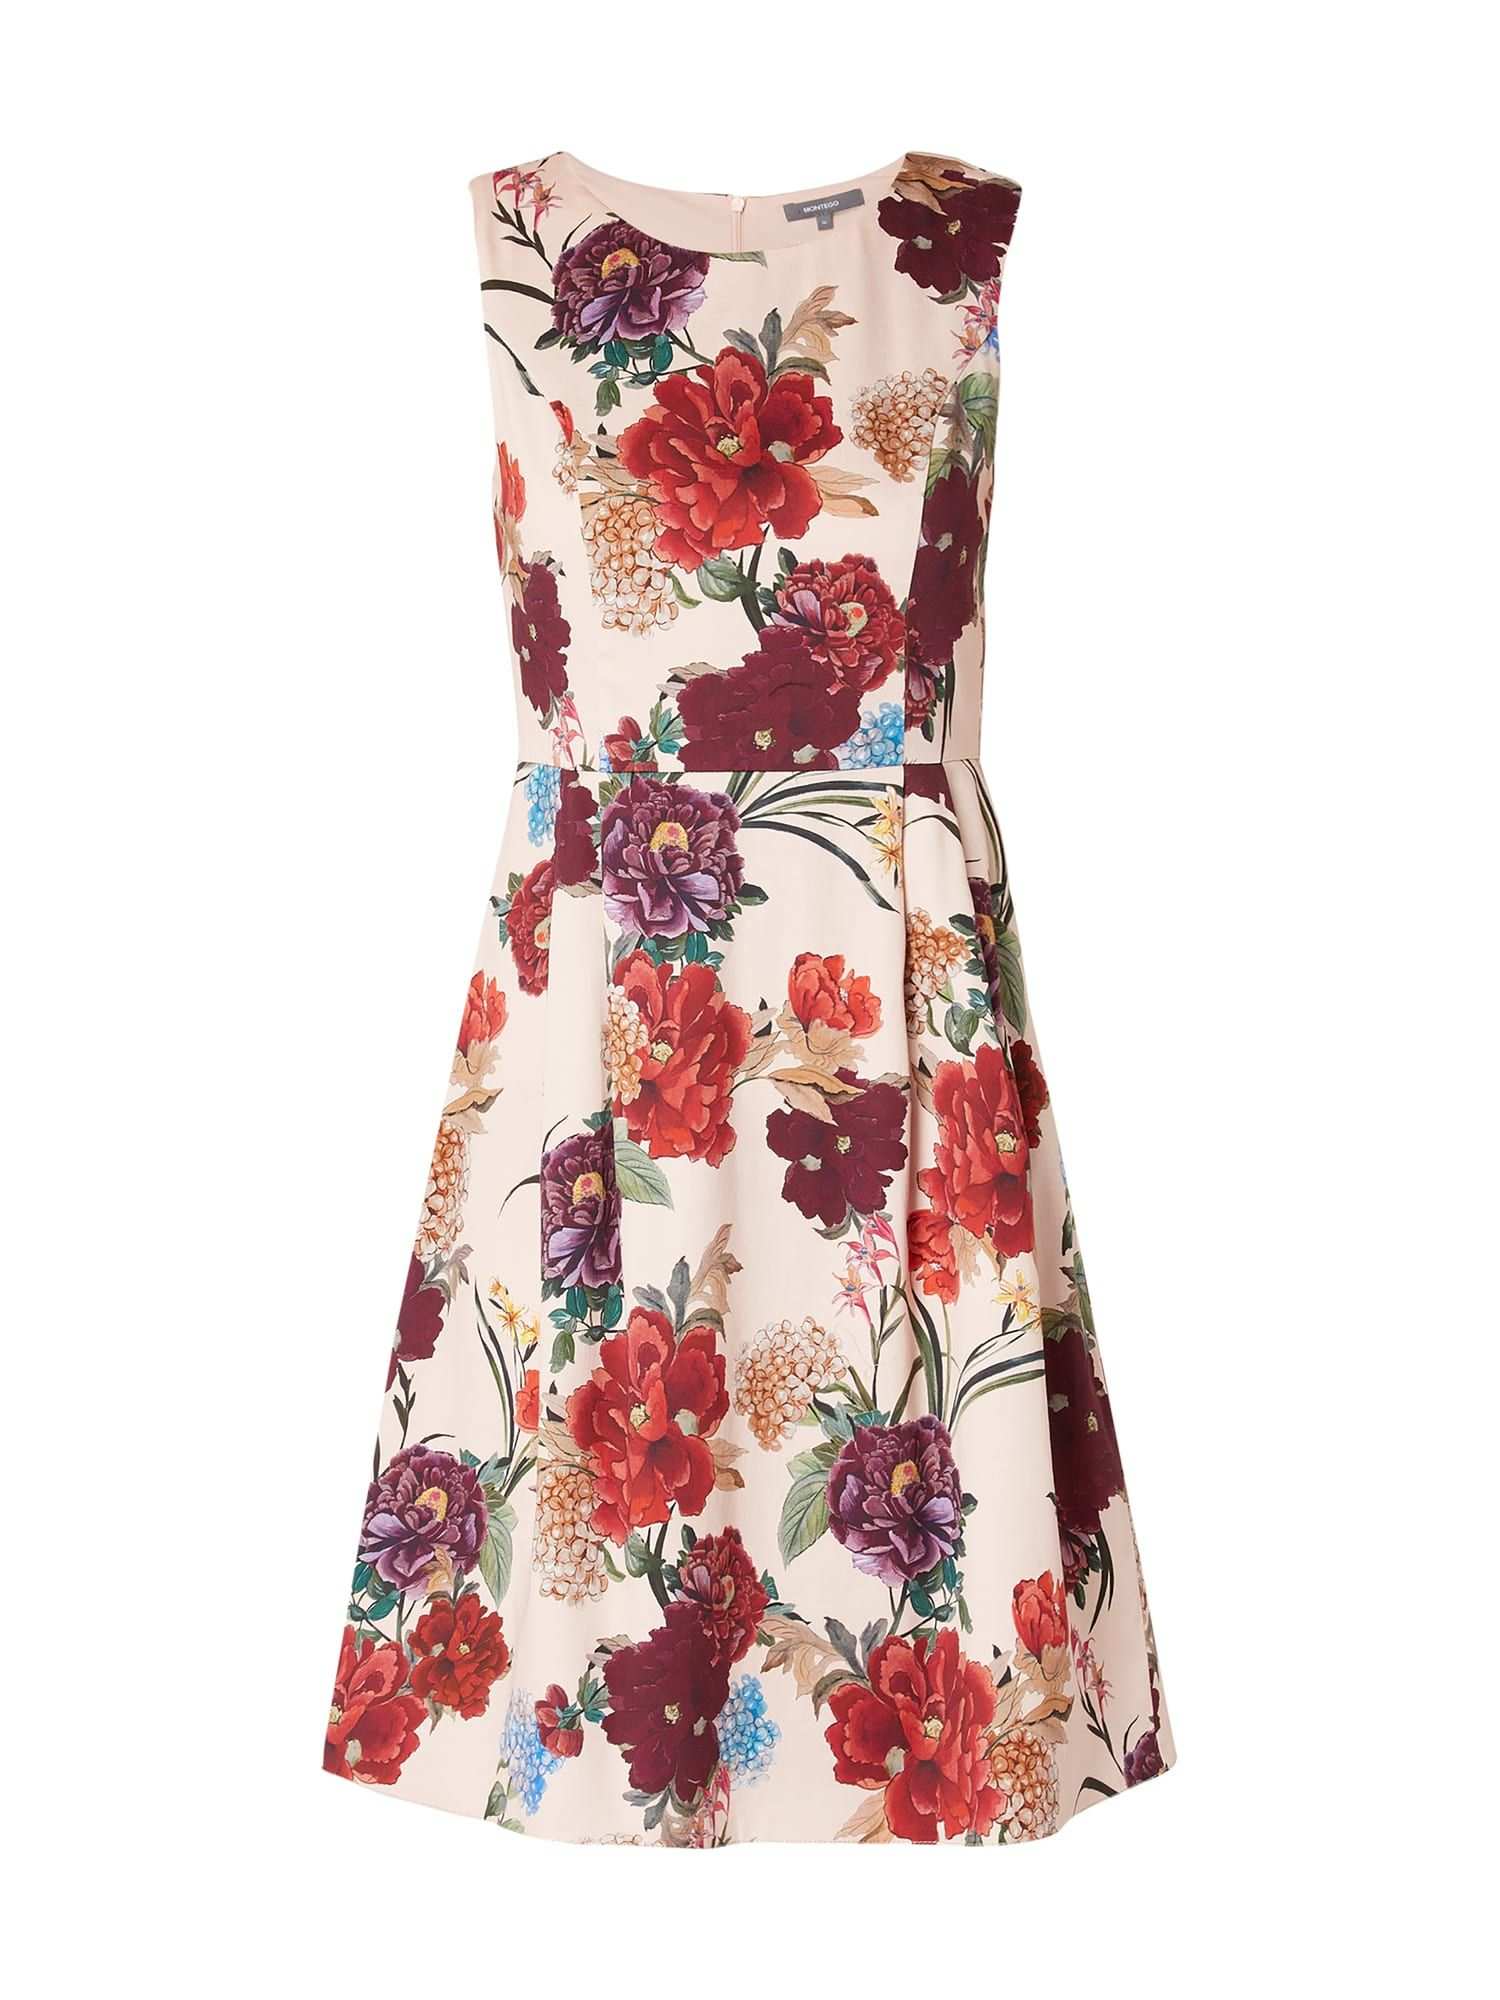 Bei P C Freizeitkleider Von Montego Jetzt Montego Kleid Mit Floralem Muster In Rose Online Kaufen 9813640 Freizeitkleider Kleider Floral Muster